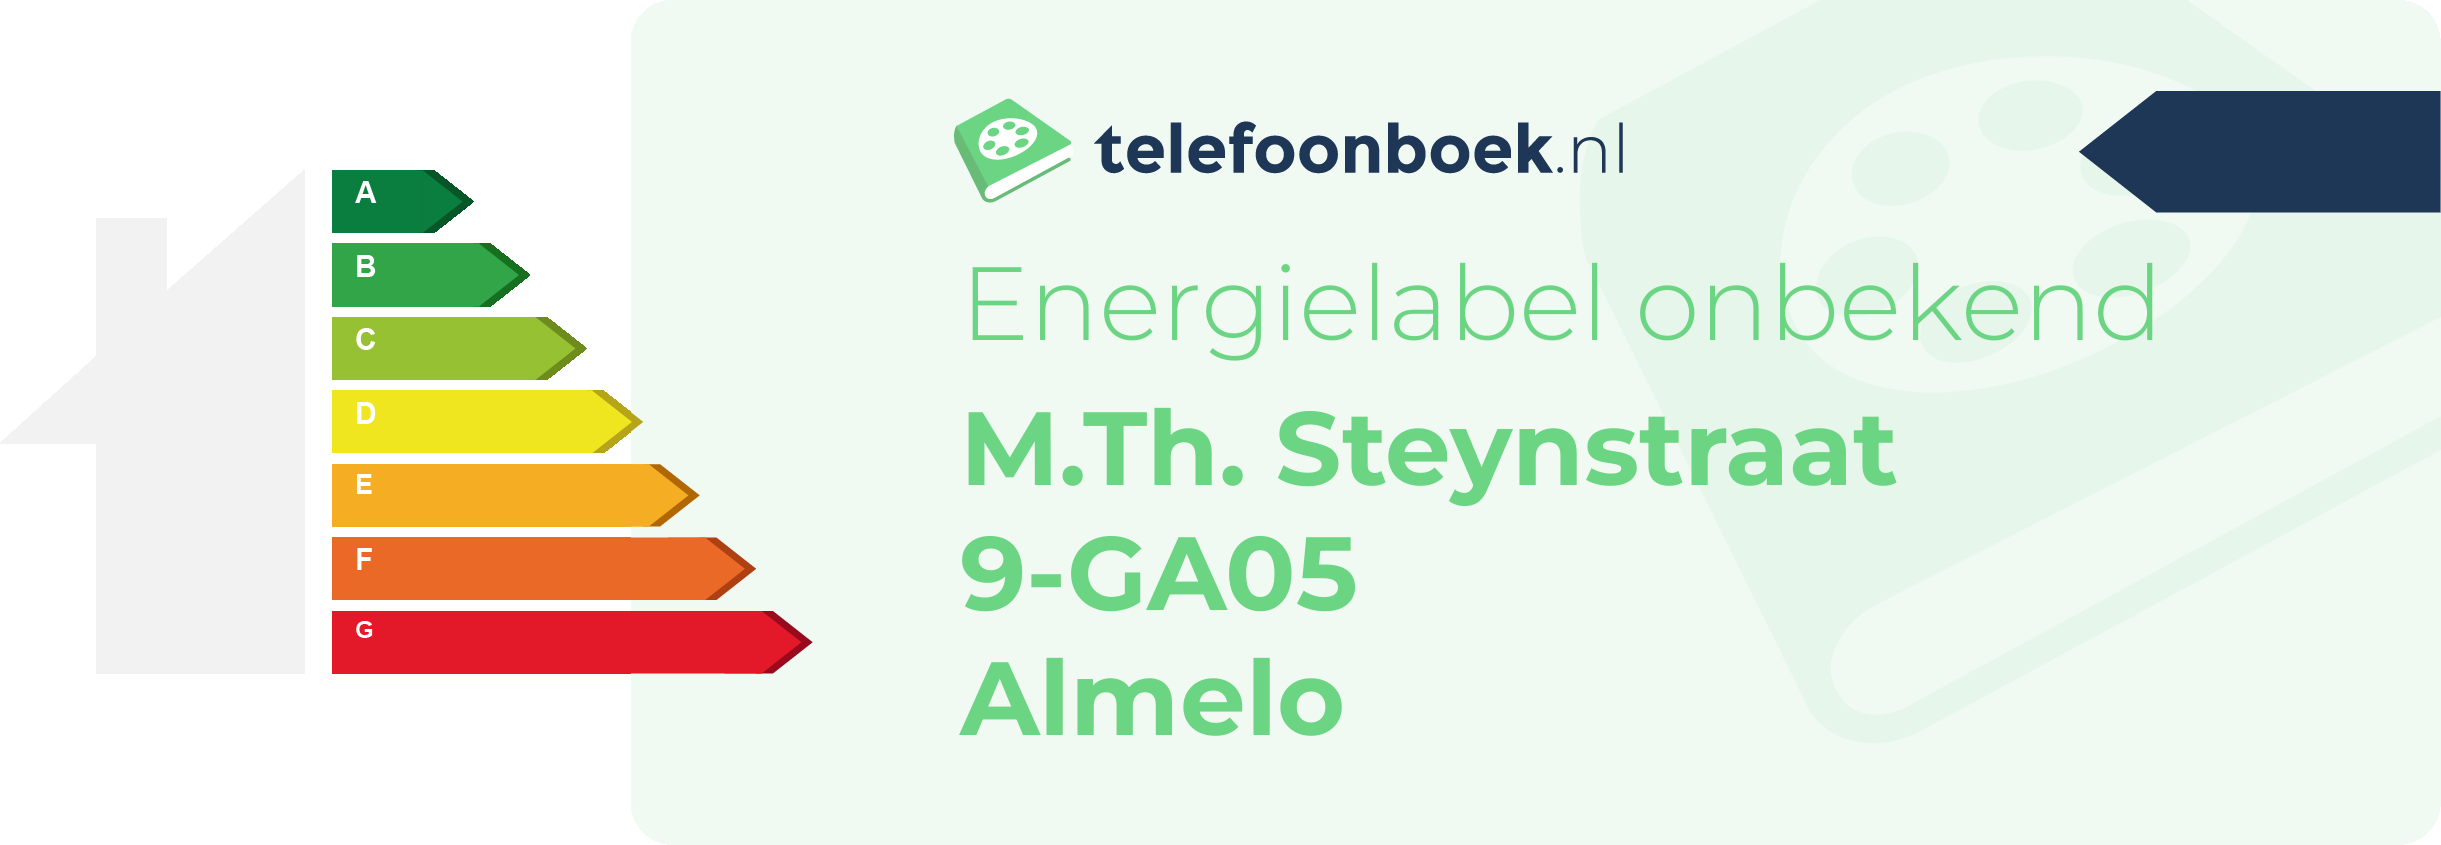 Energielabel M.Th. Steynstraat 9-GA05 Almelo